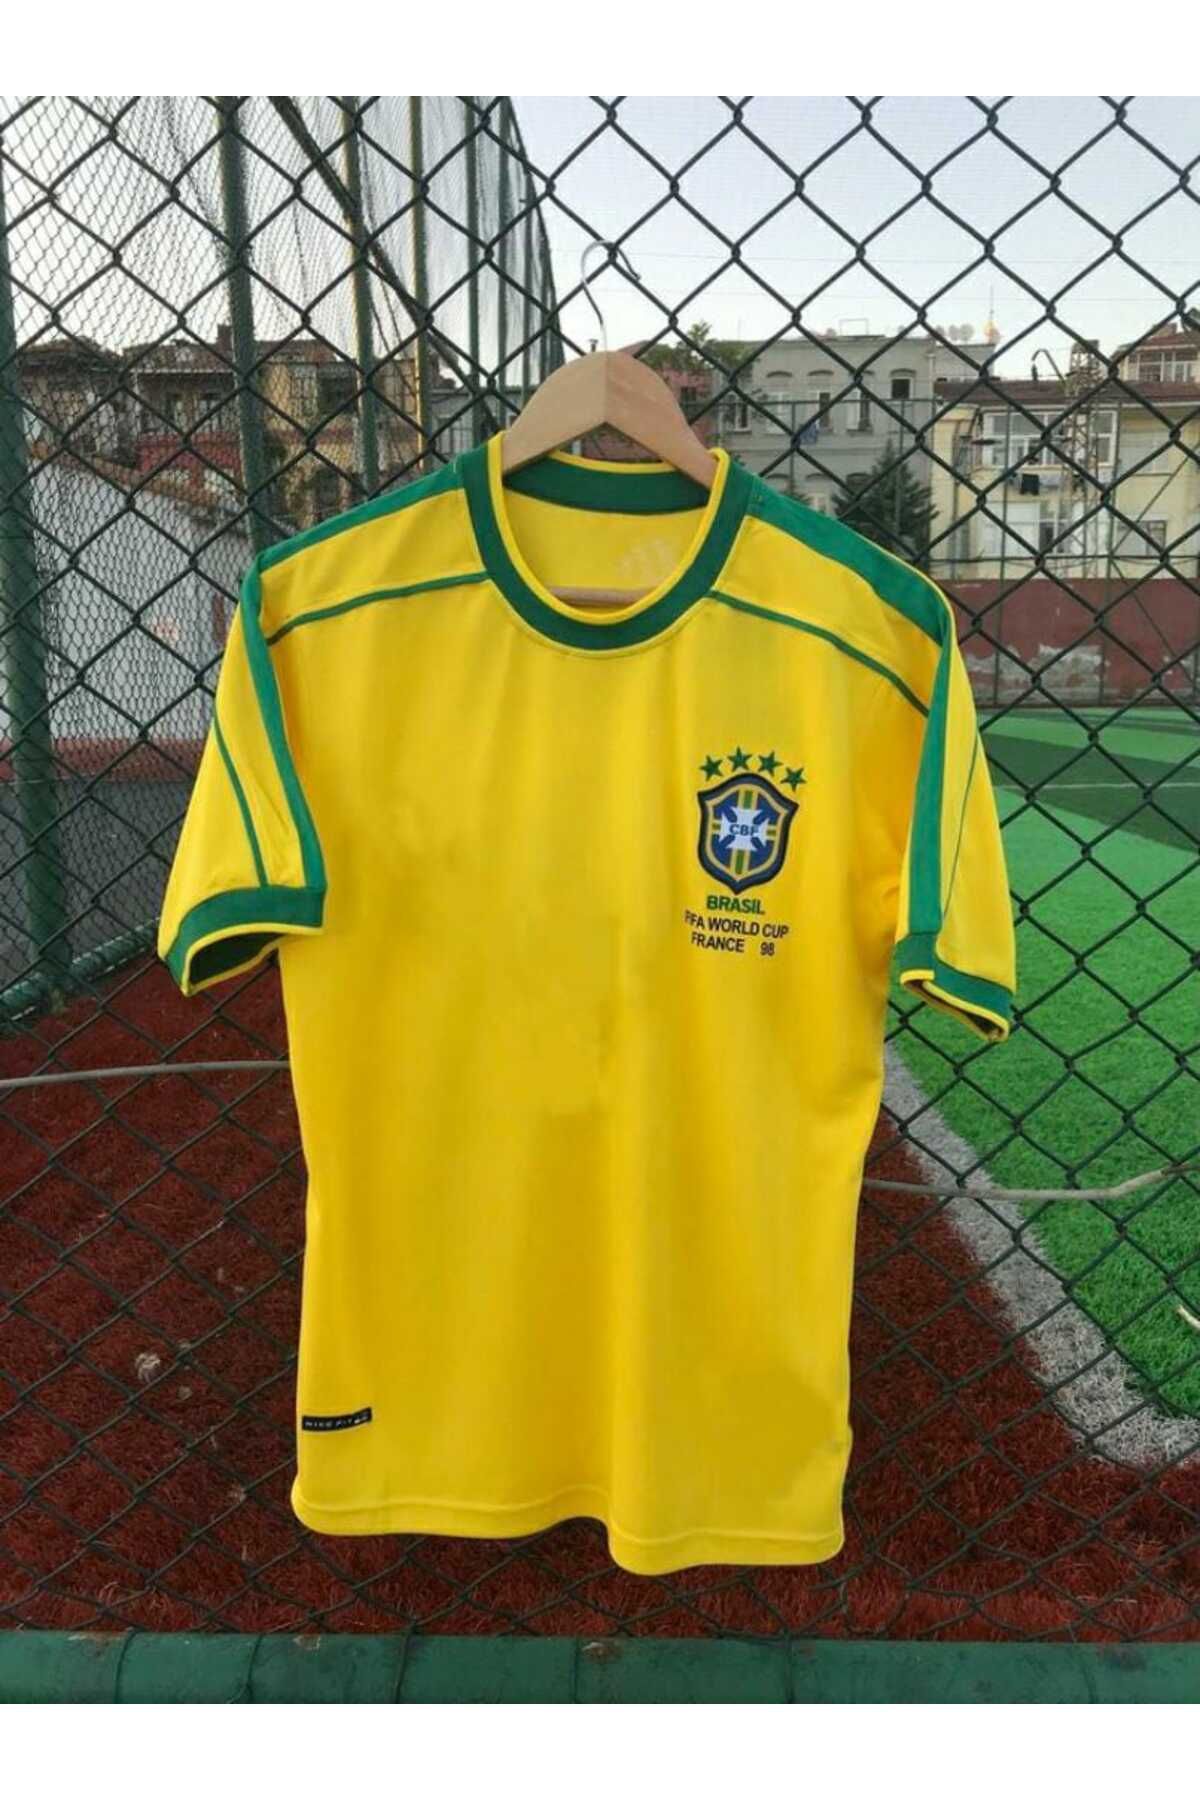 BYSPORTAKUS Brezilya Milli Takımı 98 Dünya Kupası Rivaldo Nostalji Forması